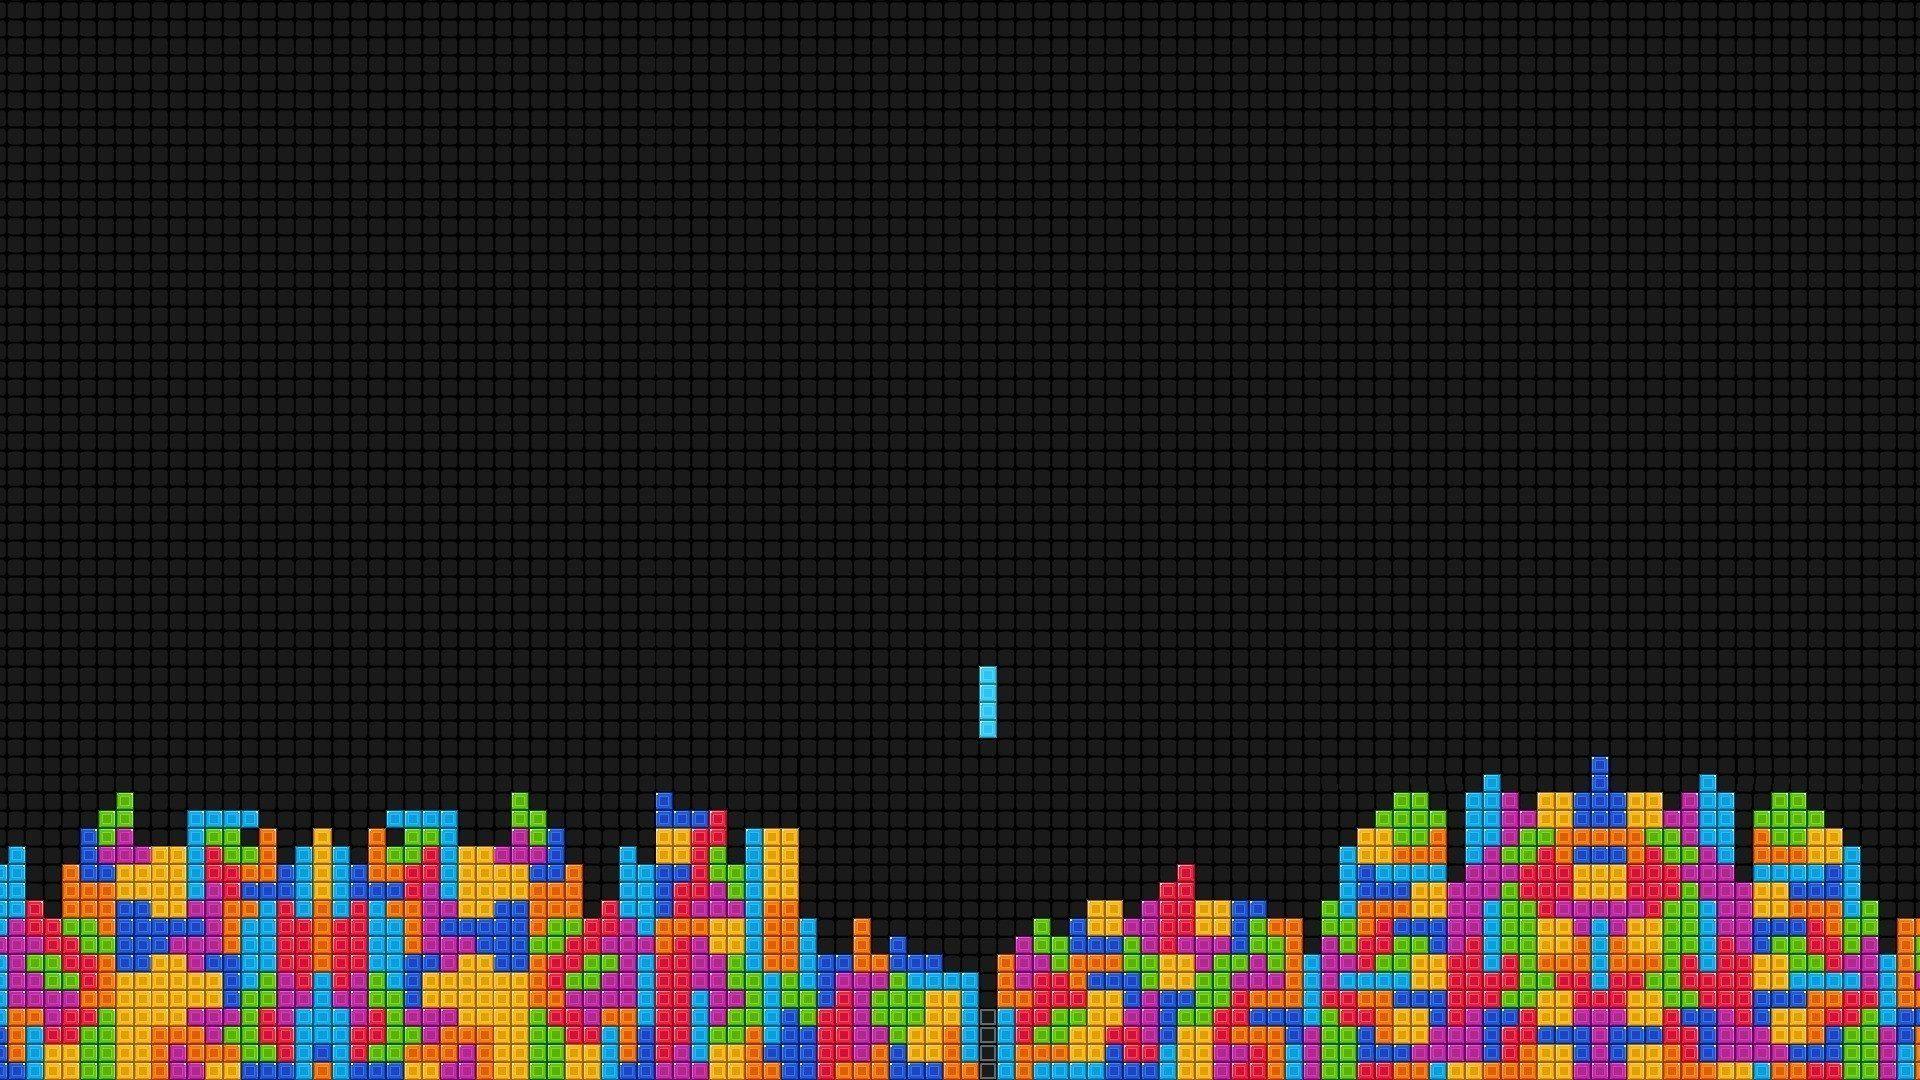 Tutustu 81+ imagen tetris wallpaper